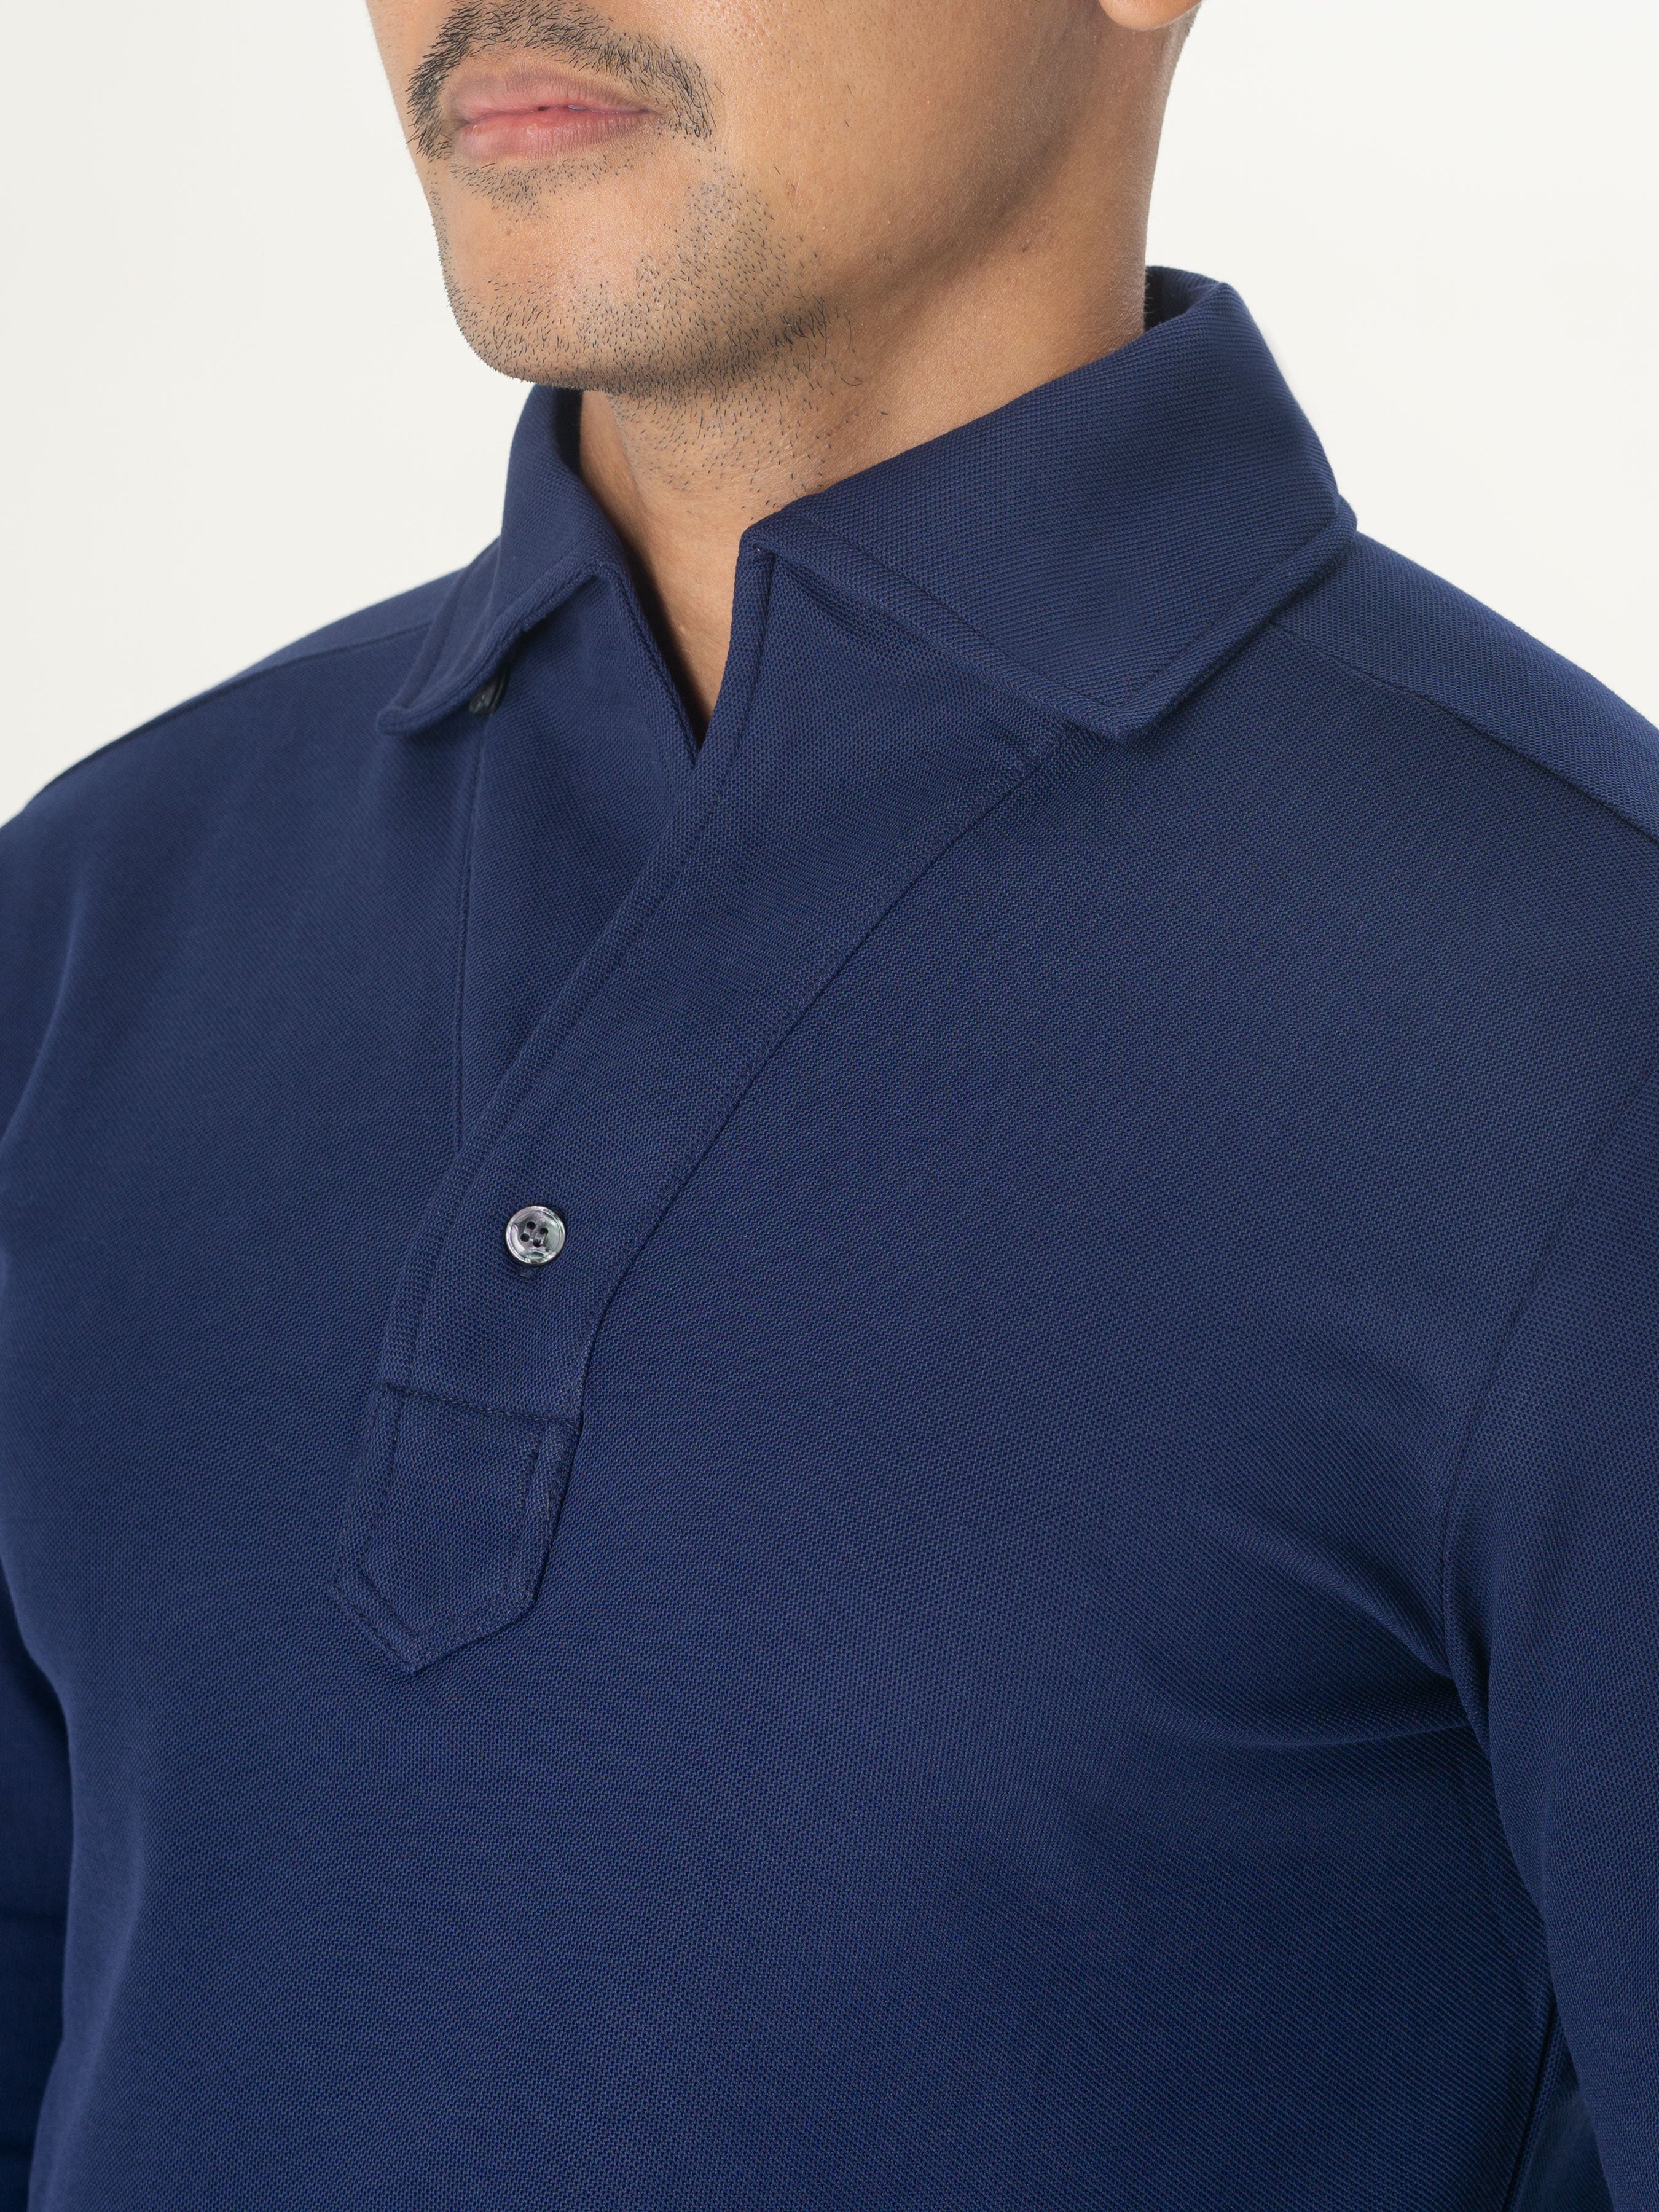 Long Sleeve Polo Shirt - Navy Blue One-Piece Collar Single Button ...